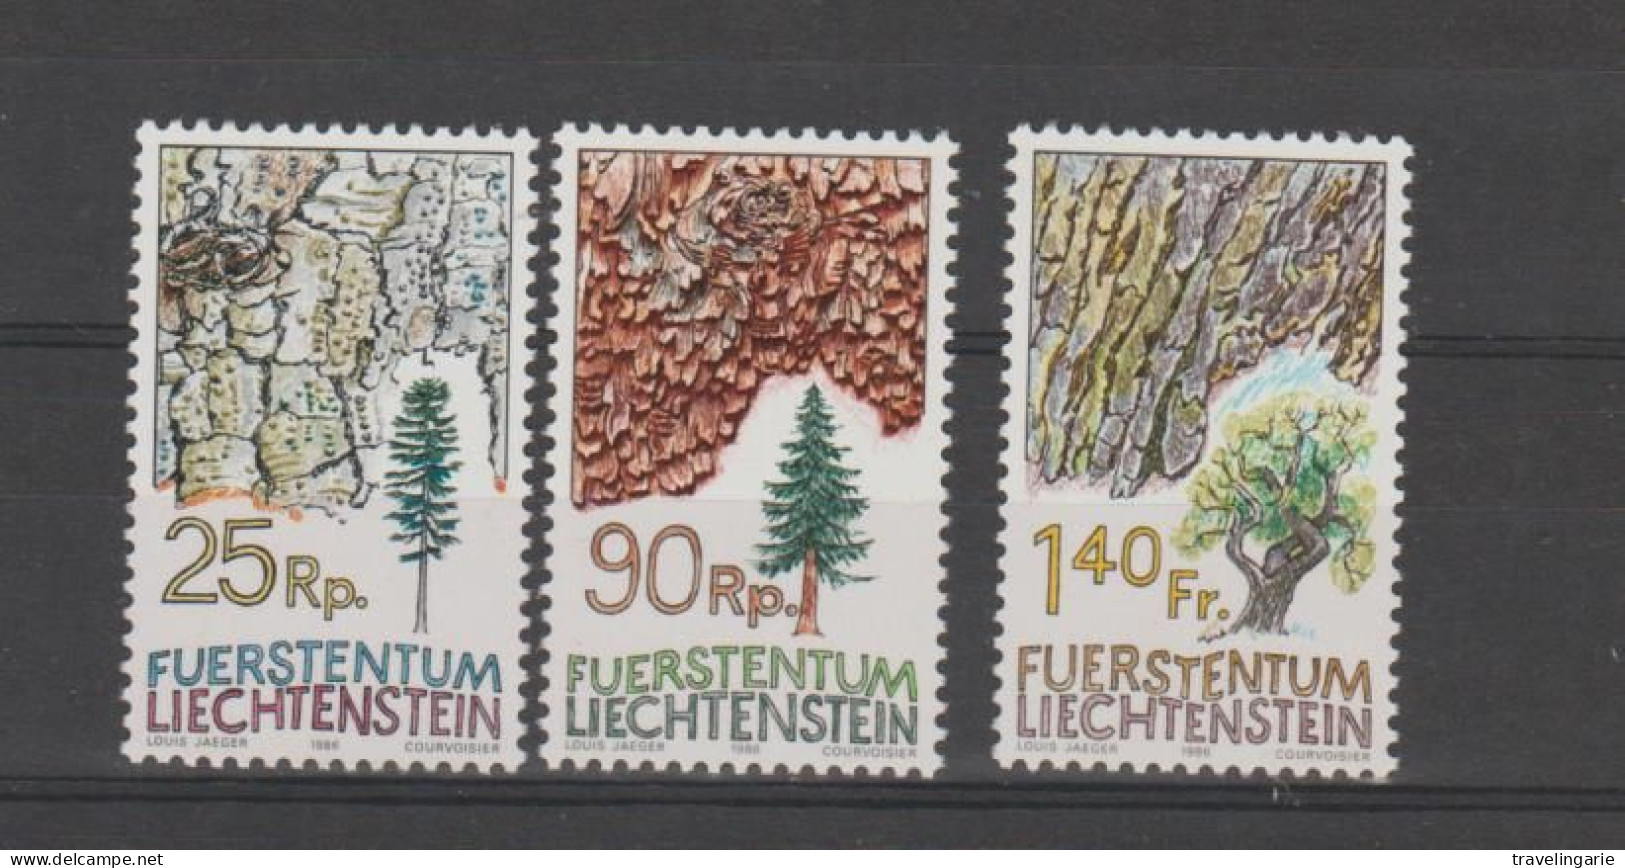 Liechtenstein 1986 Flora - Trees ** MNH - Trees